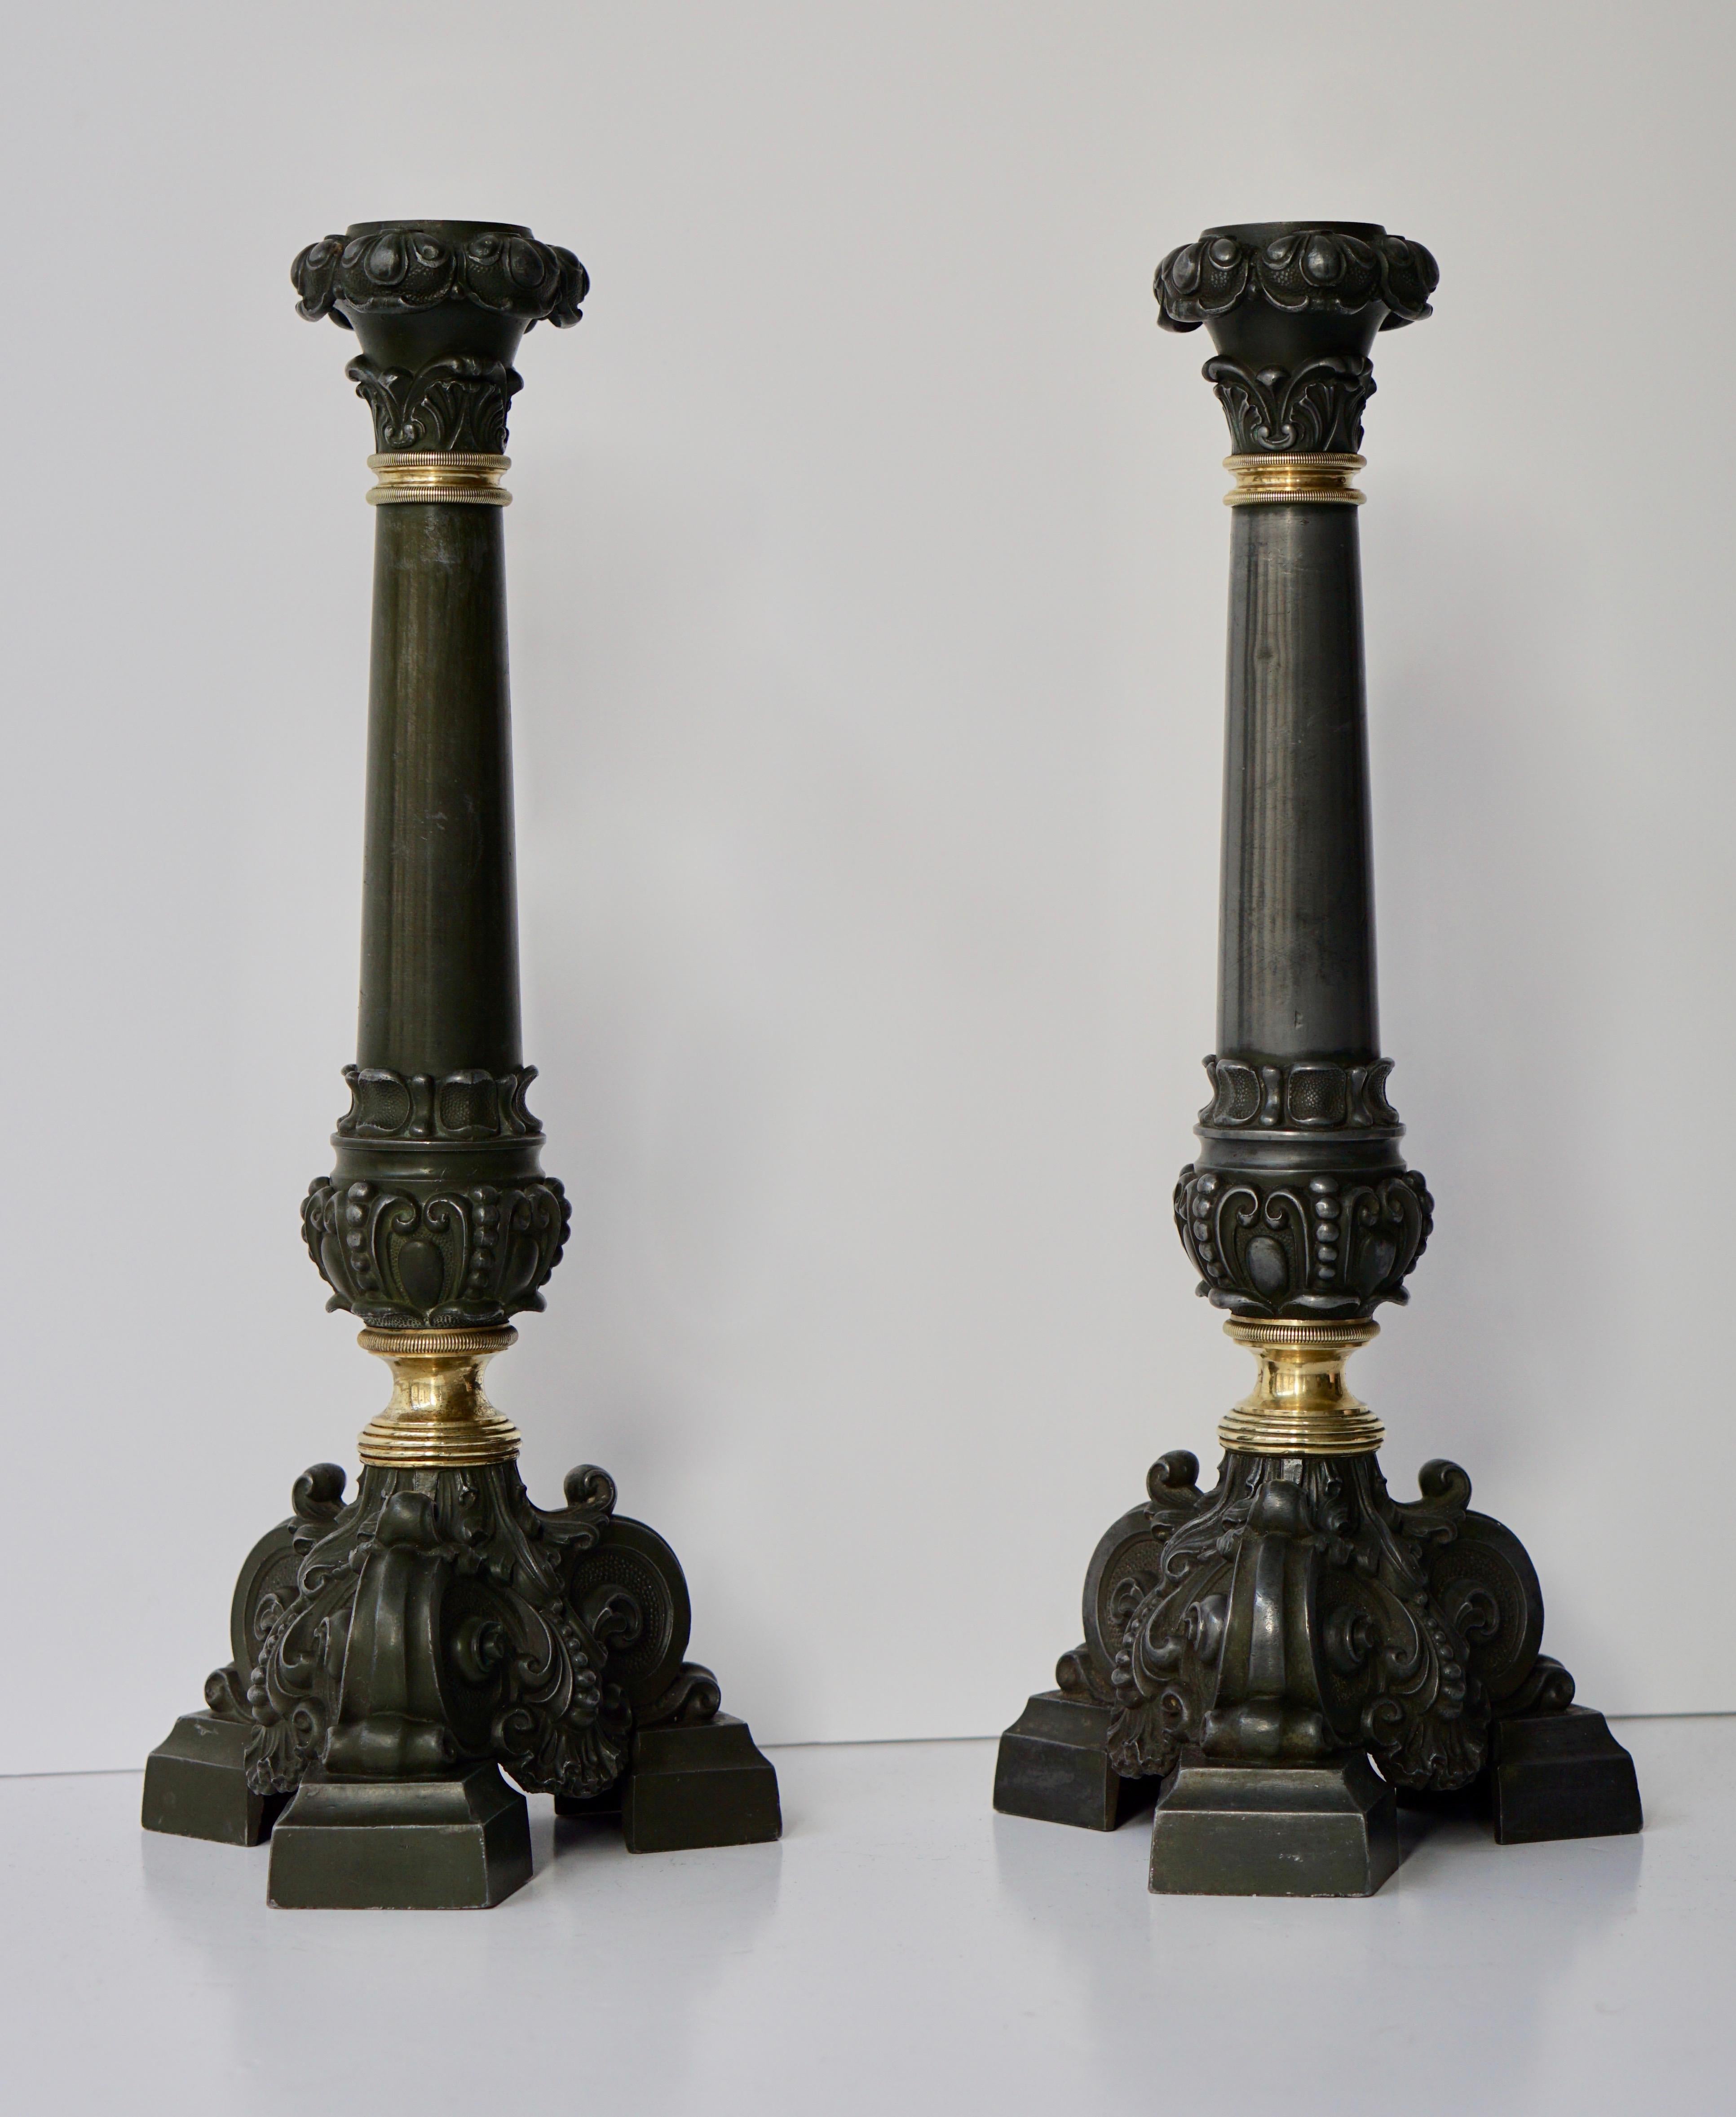 Italienisches Paar antiker Messing-Kerzenhalter aus dem späten 19. Jahrhundert.
Dieses Paar Kerzenhalter aus antikem Messing wurde von einem italienischen Kunsthandwerker handgefertigt. Um das feine und elegante Blumen- und Blattdekor hervorzuheben.